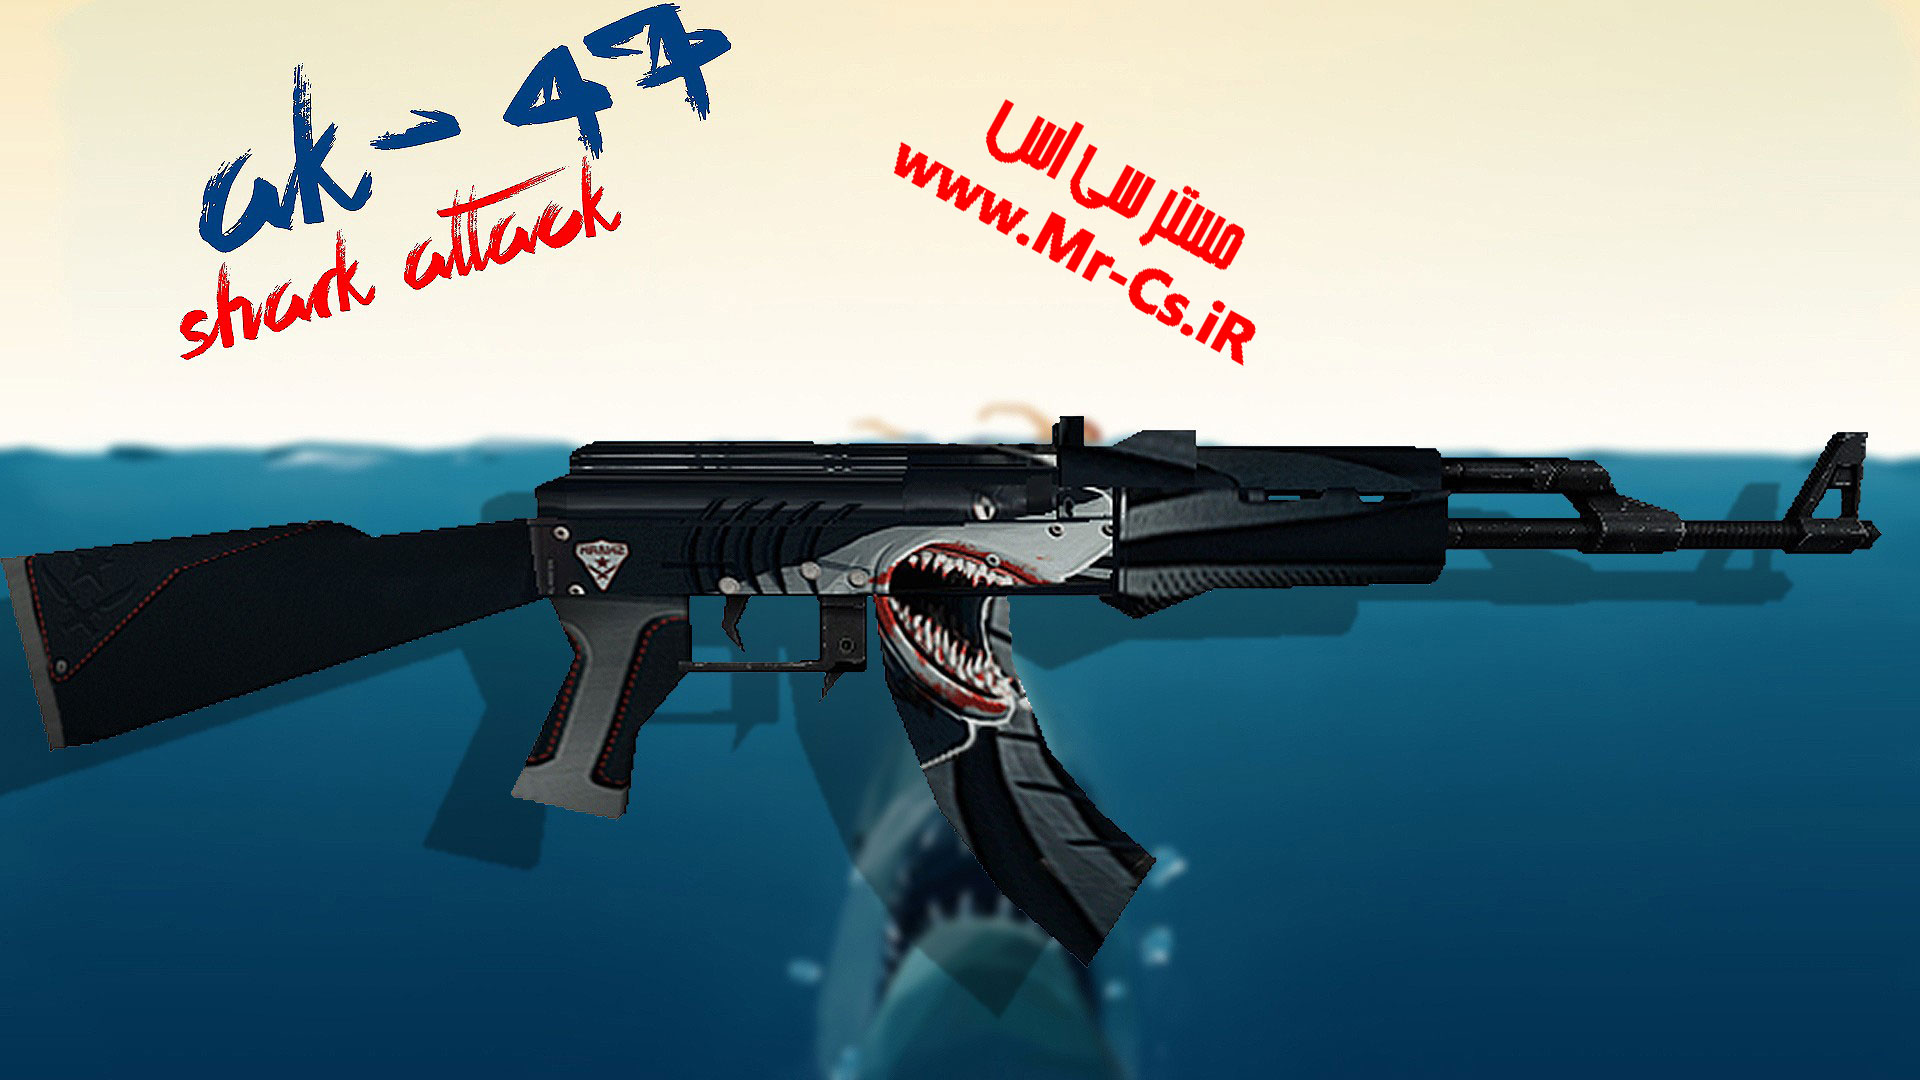 دانلود اسکین زیبای Ak47 | Shark برای سی اس 1.6